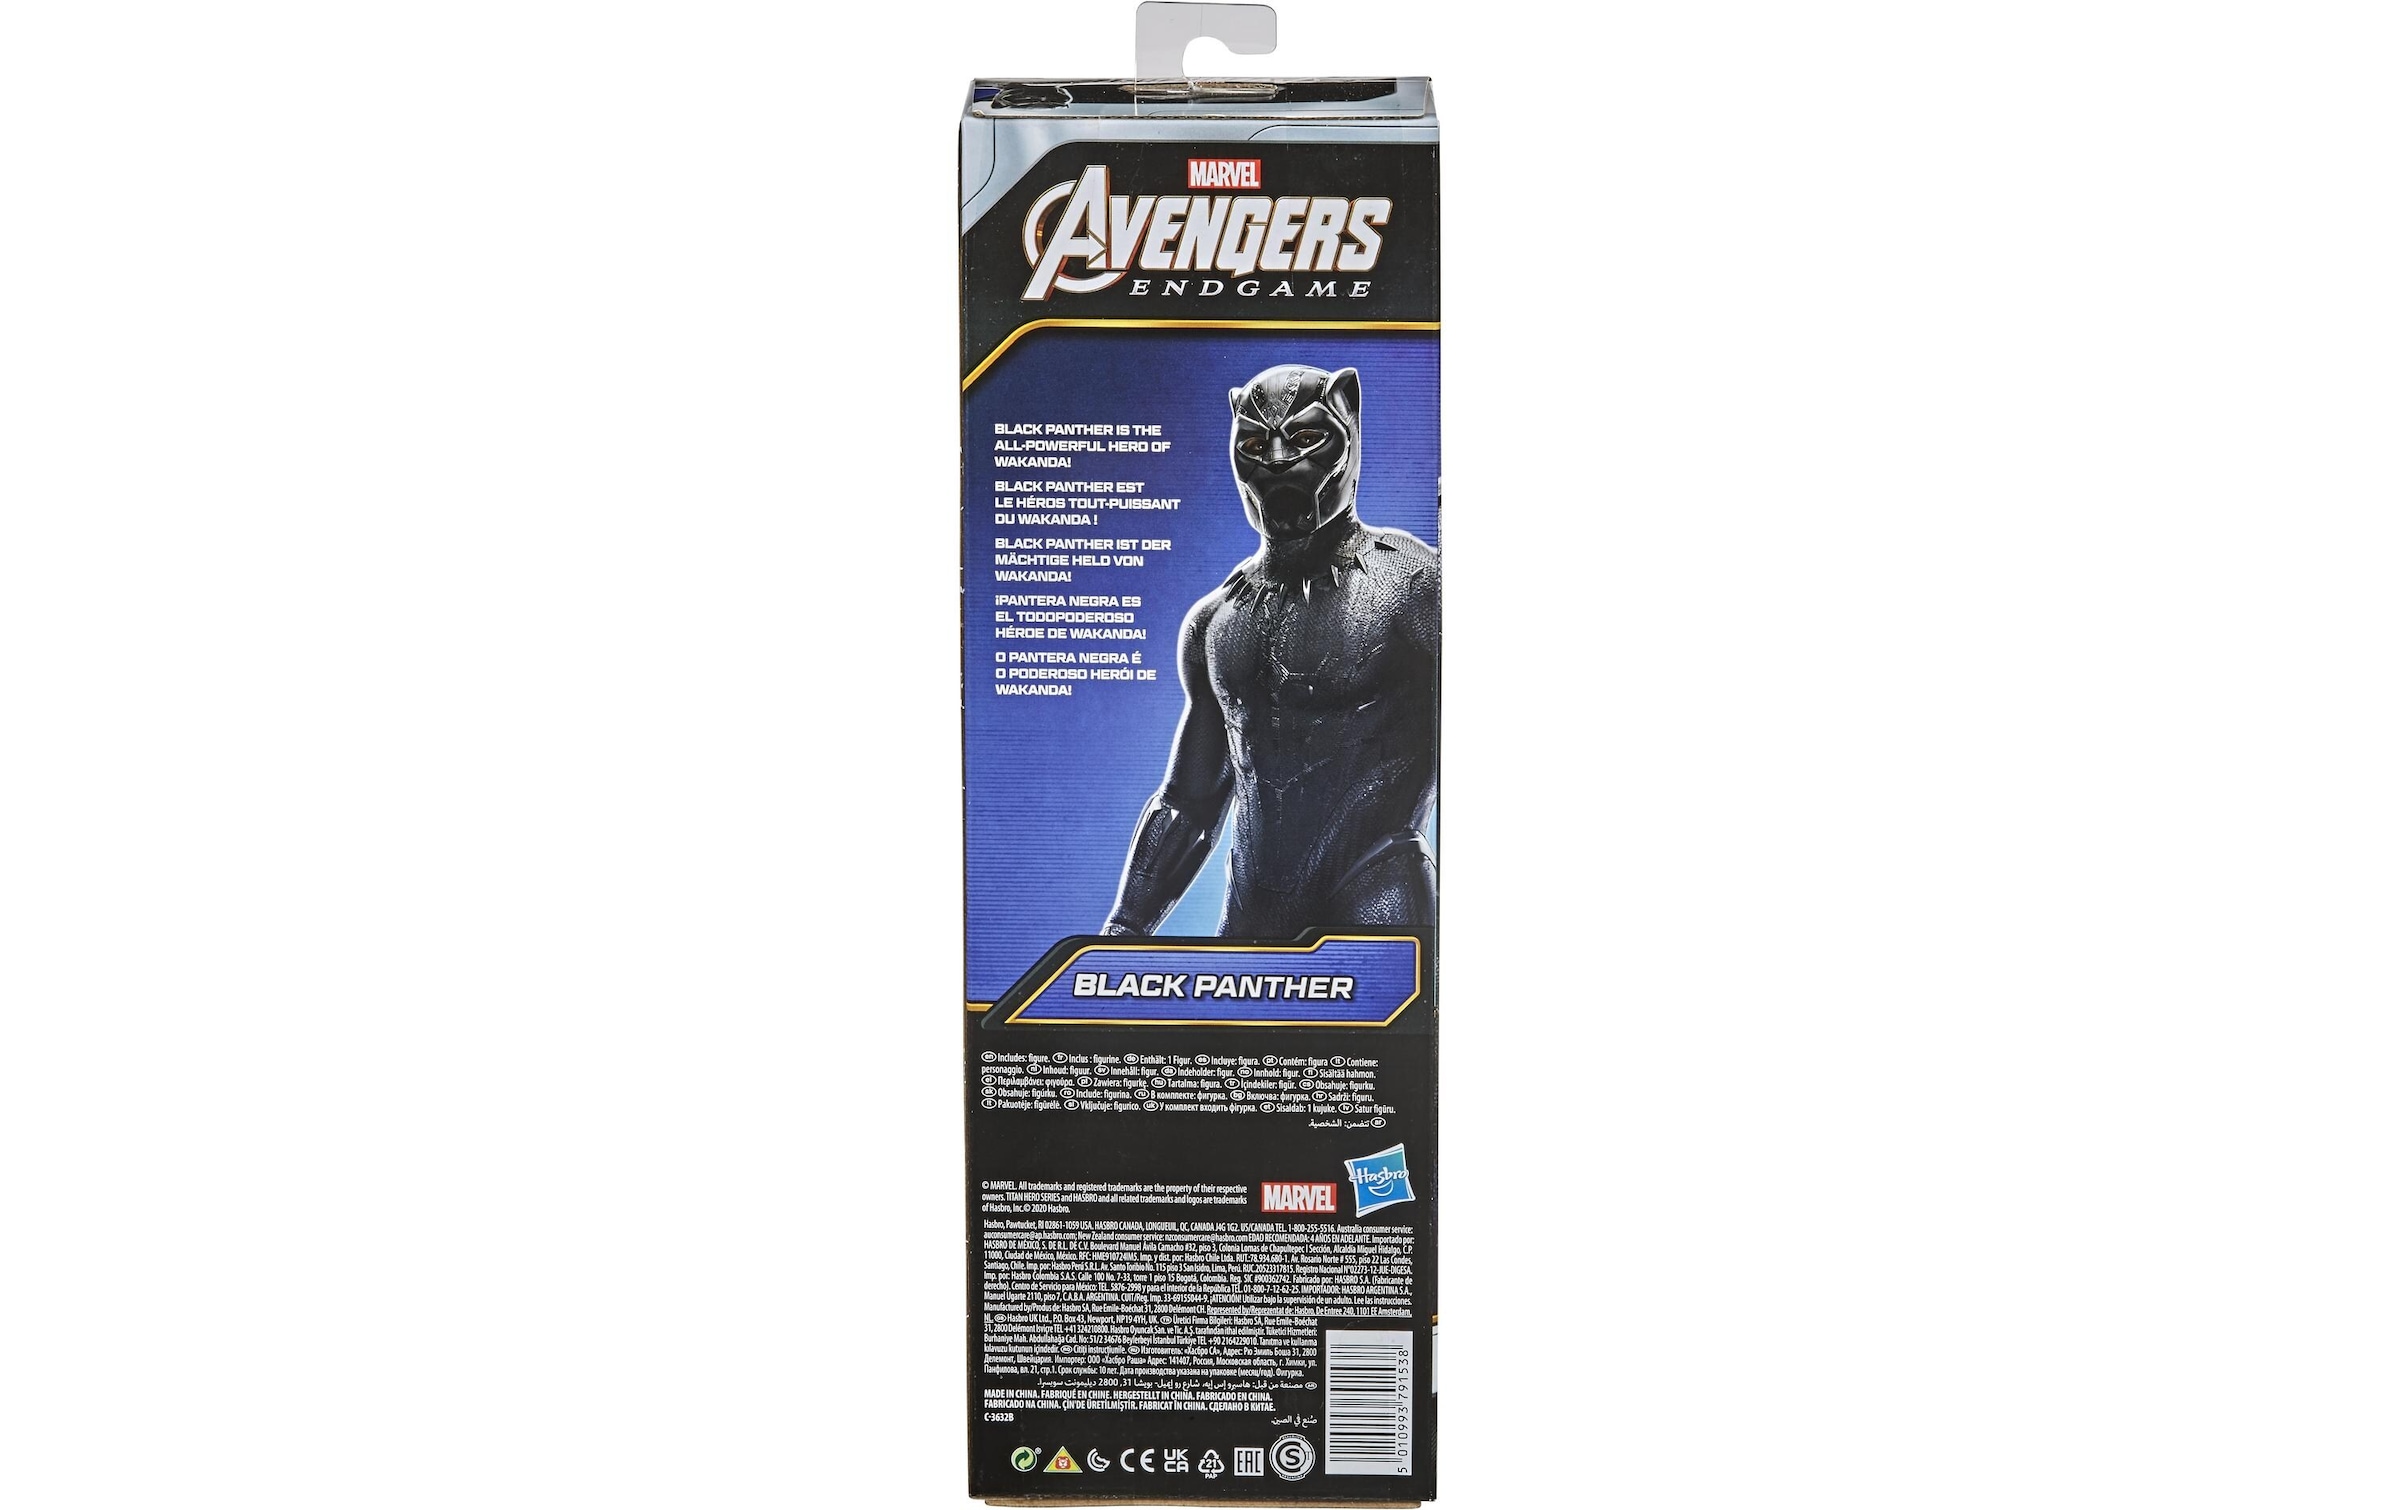 MARVEL Actionfigur »Avengers Titan Hero Serie«